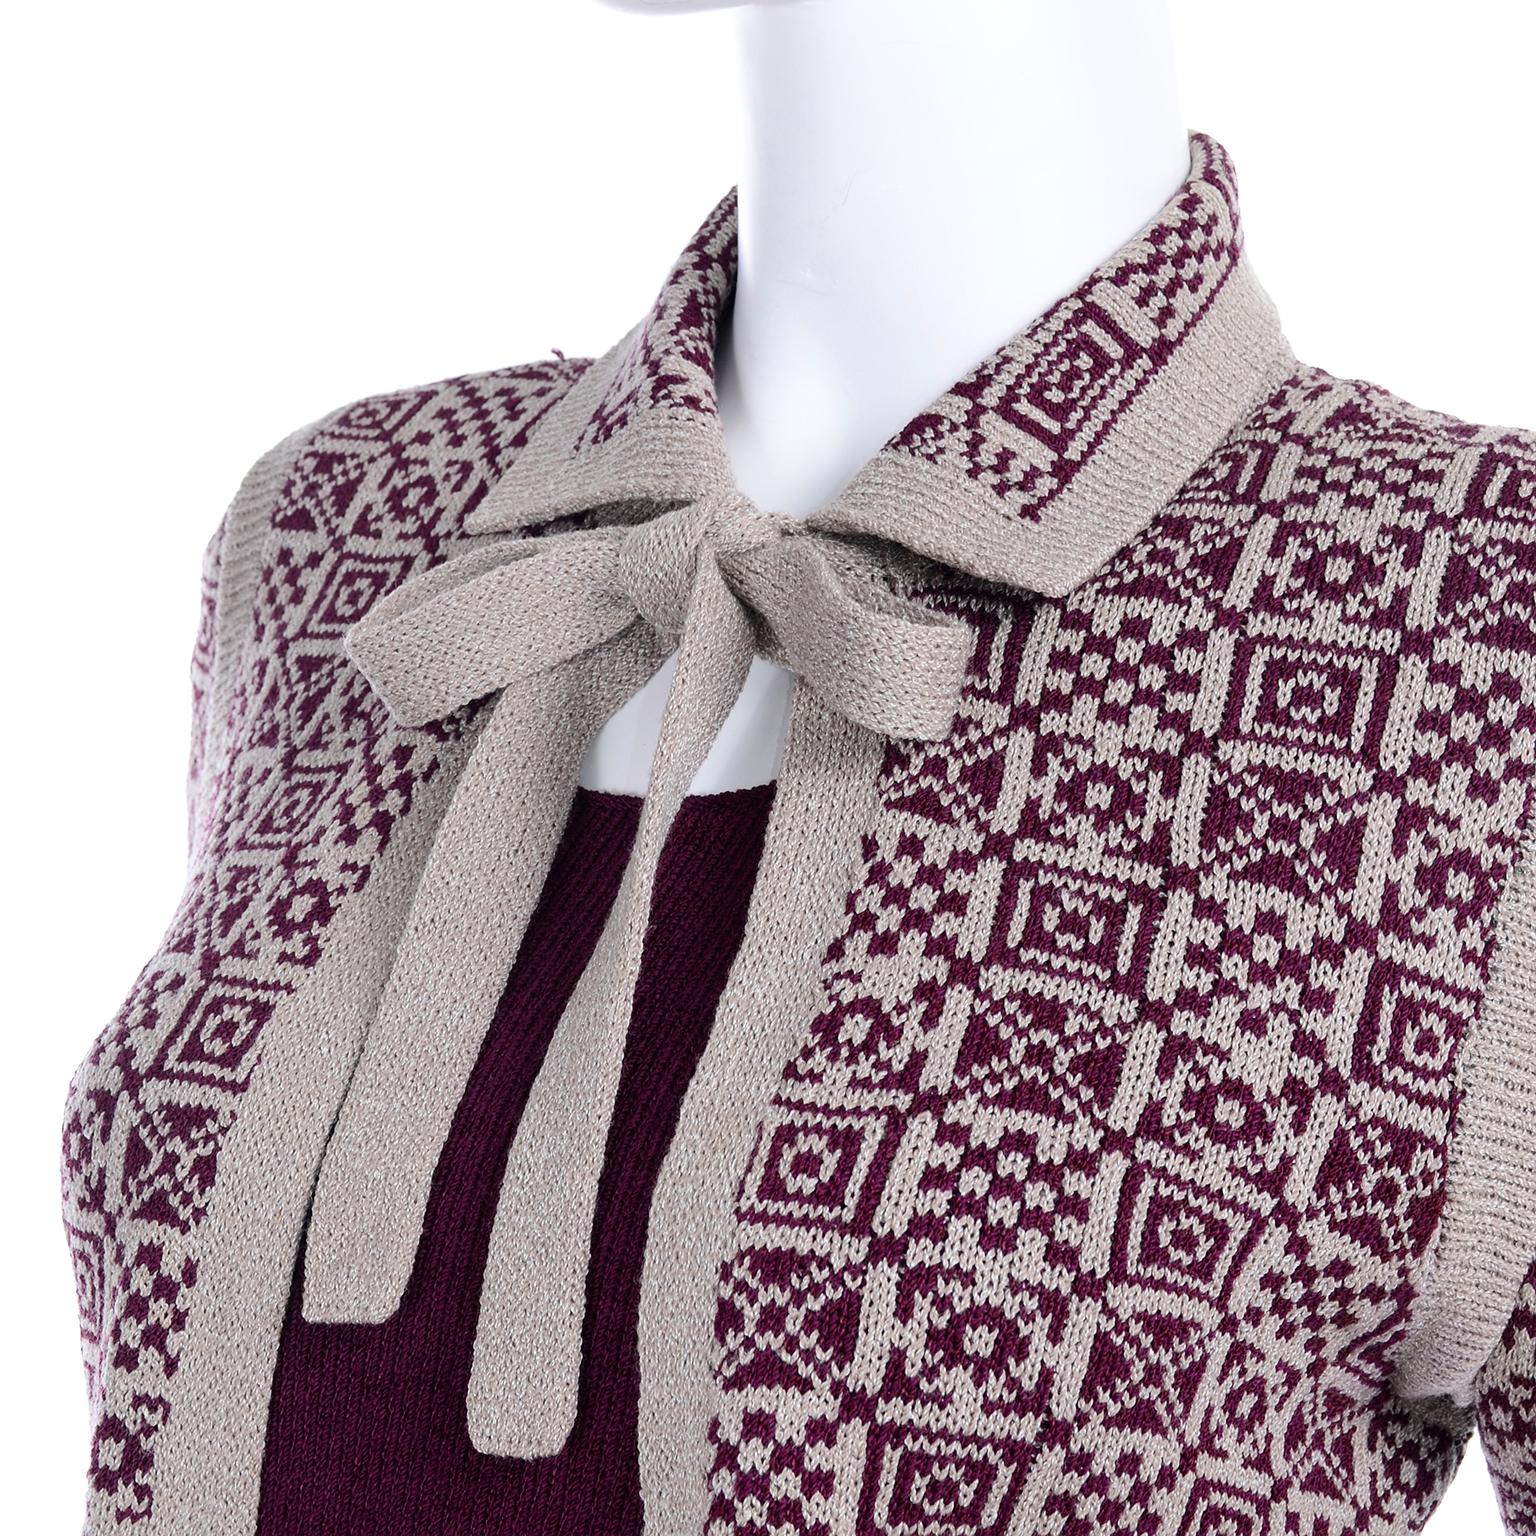 1970s Adolfo Suit 2 pc Skirt & Tank Dress W Bow Cardigan Jacket in Burgundy Knit 3